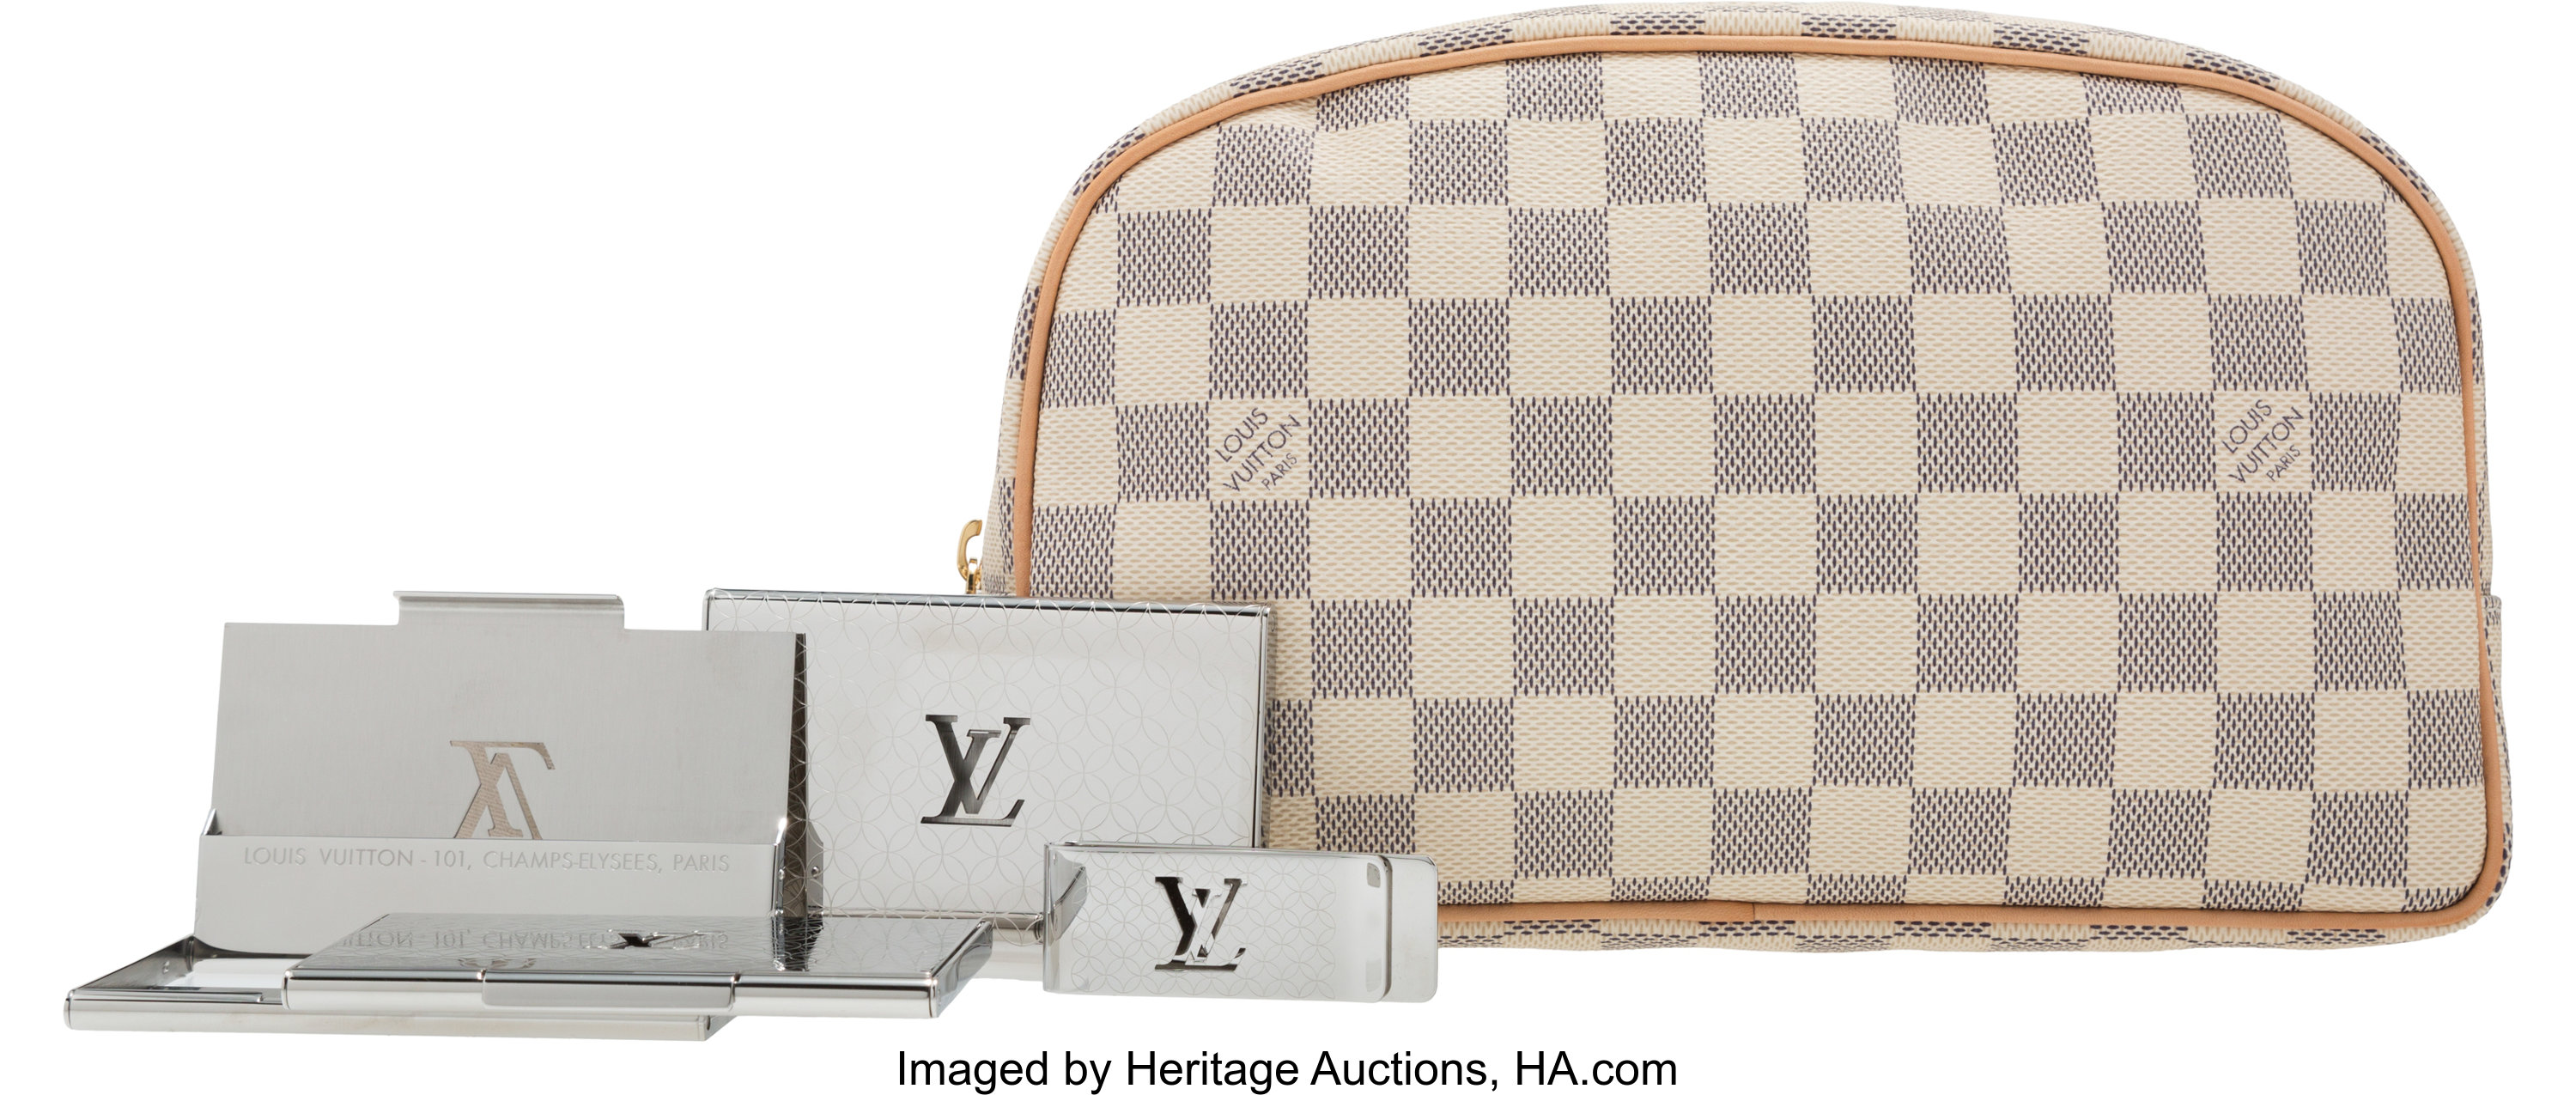 Sold at Auction: Louis Vuitton, LOUIS VUITTON POCHETTE DAMIER AZUR